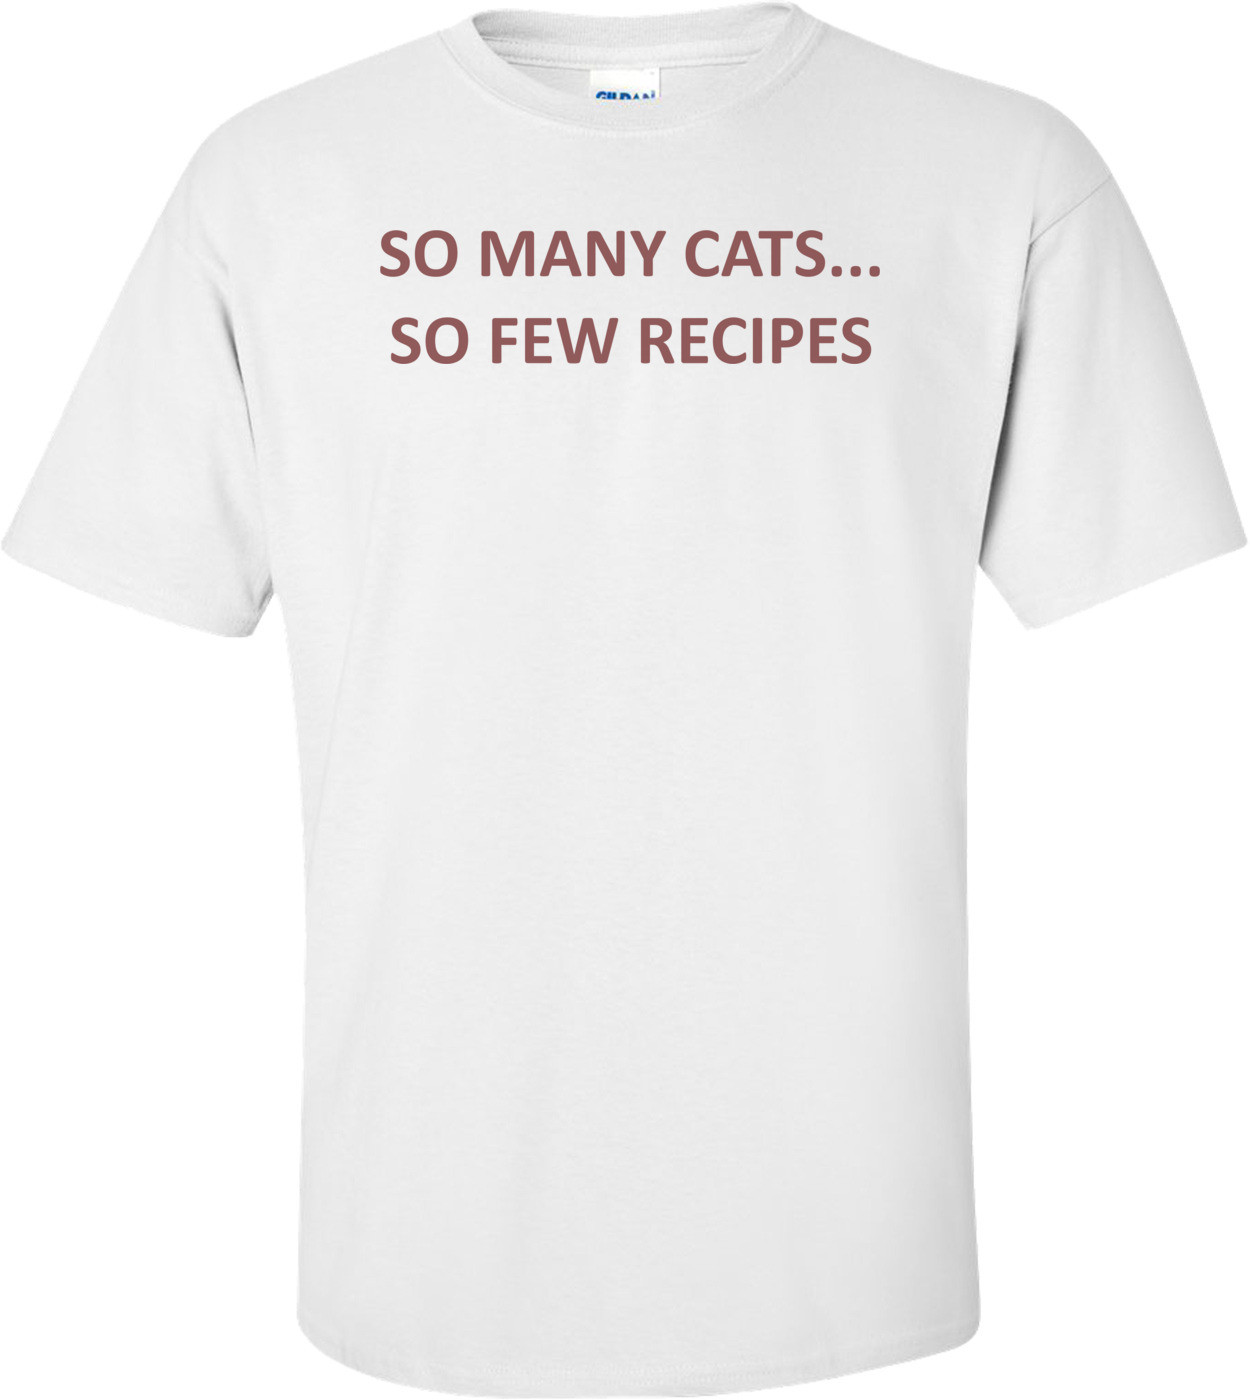 SO MANY CATS... SO FEW RECIPES Shirt